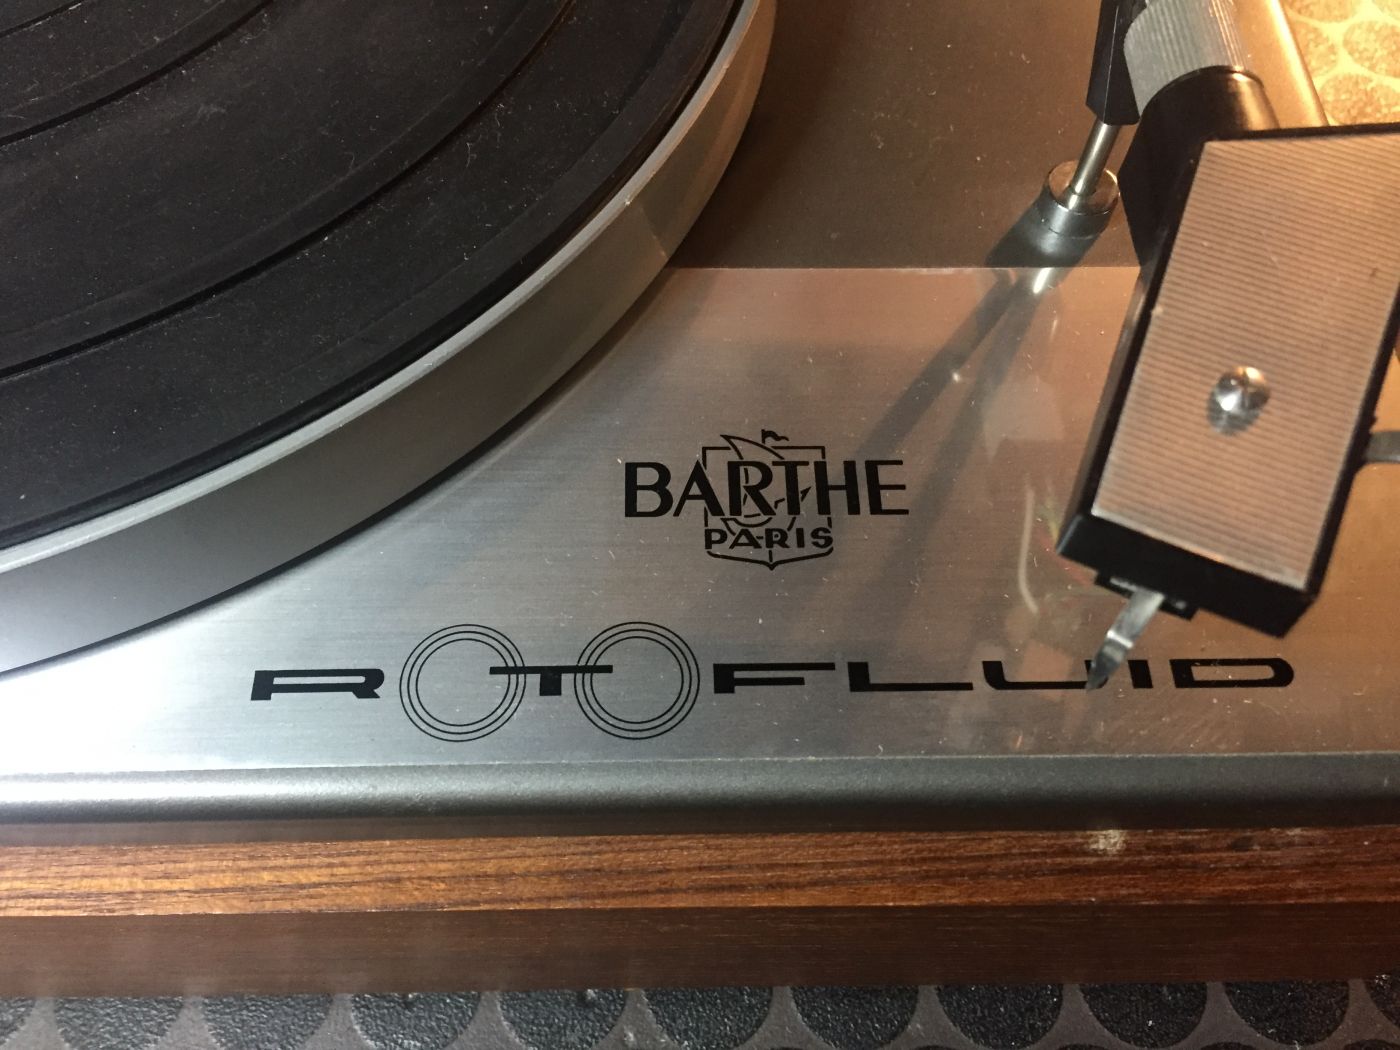 COURROIE POUR PLATINE disque vinyle Barthe Rotofluid PRO III PRO 3 PRO 4 AA  EUR 8,69 - PicClick FR